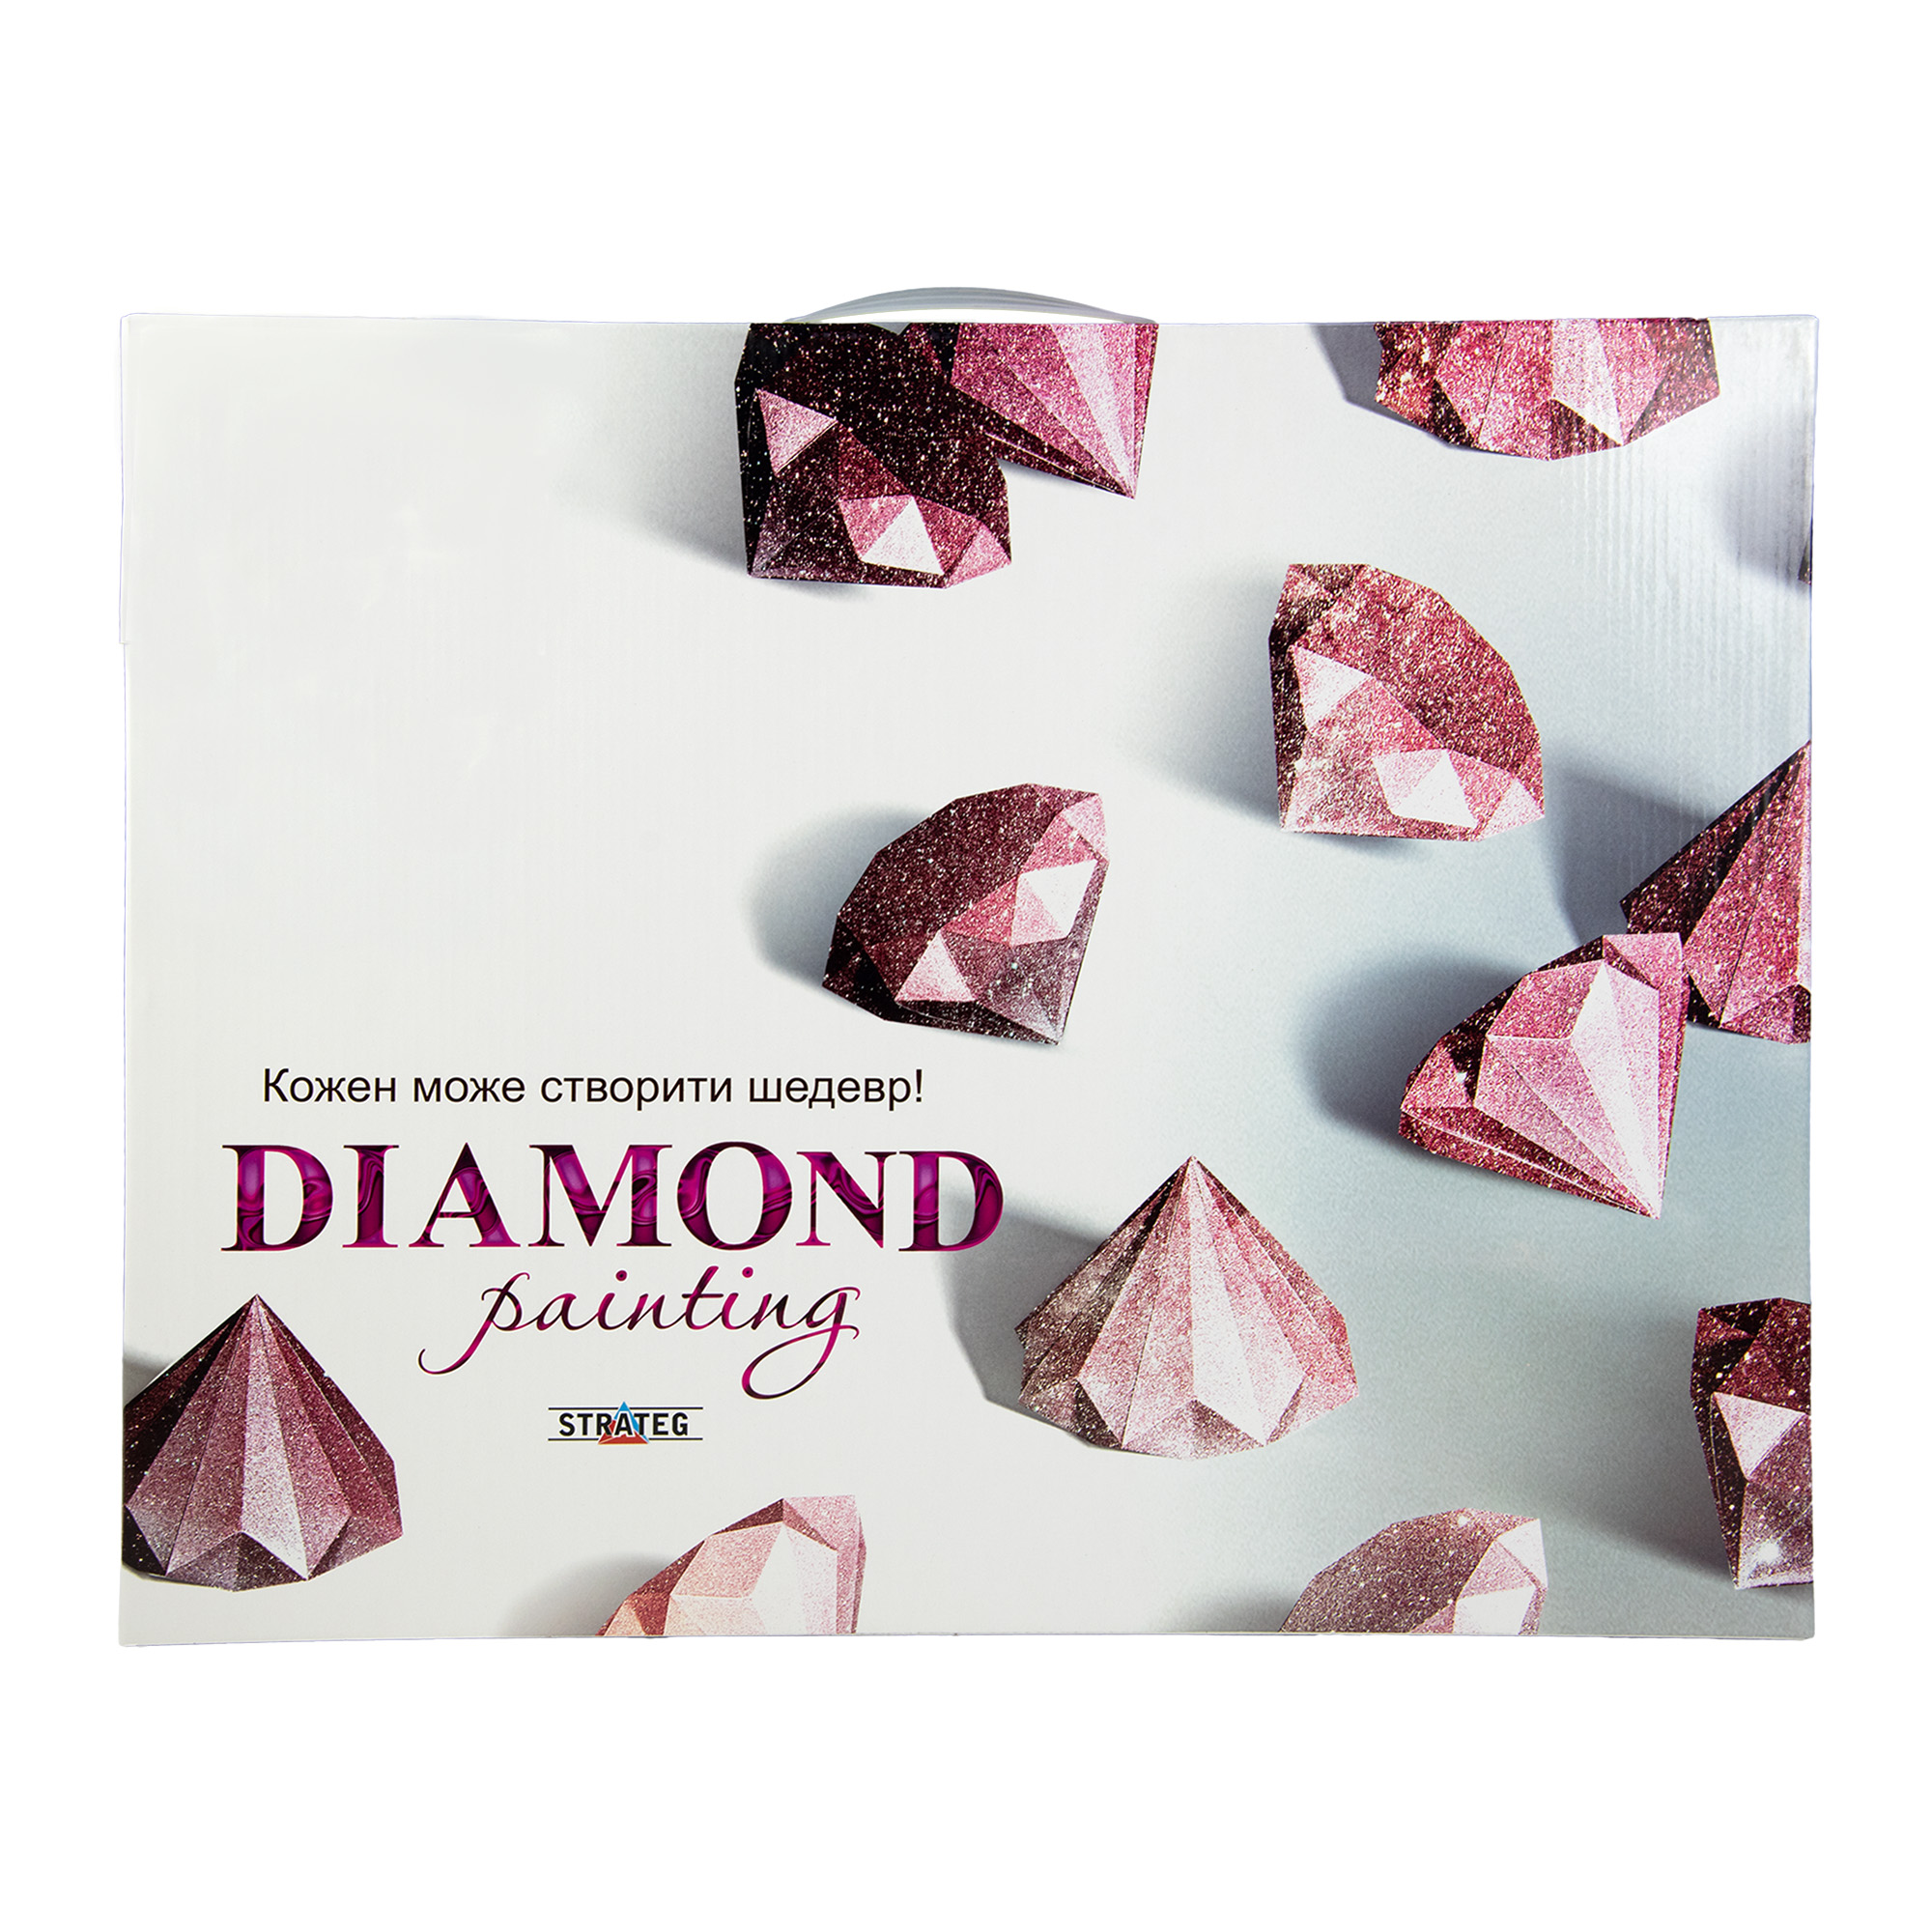 Diamantgemälde Strateg PREMIUM Ansichten Größe 40x50 cm (L-239)